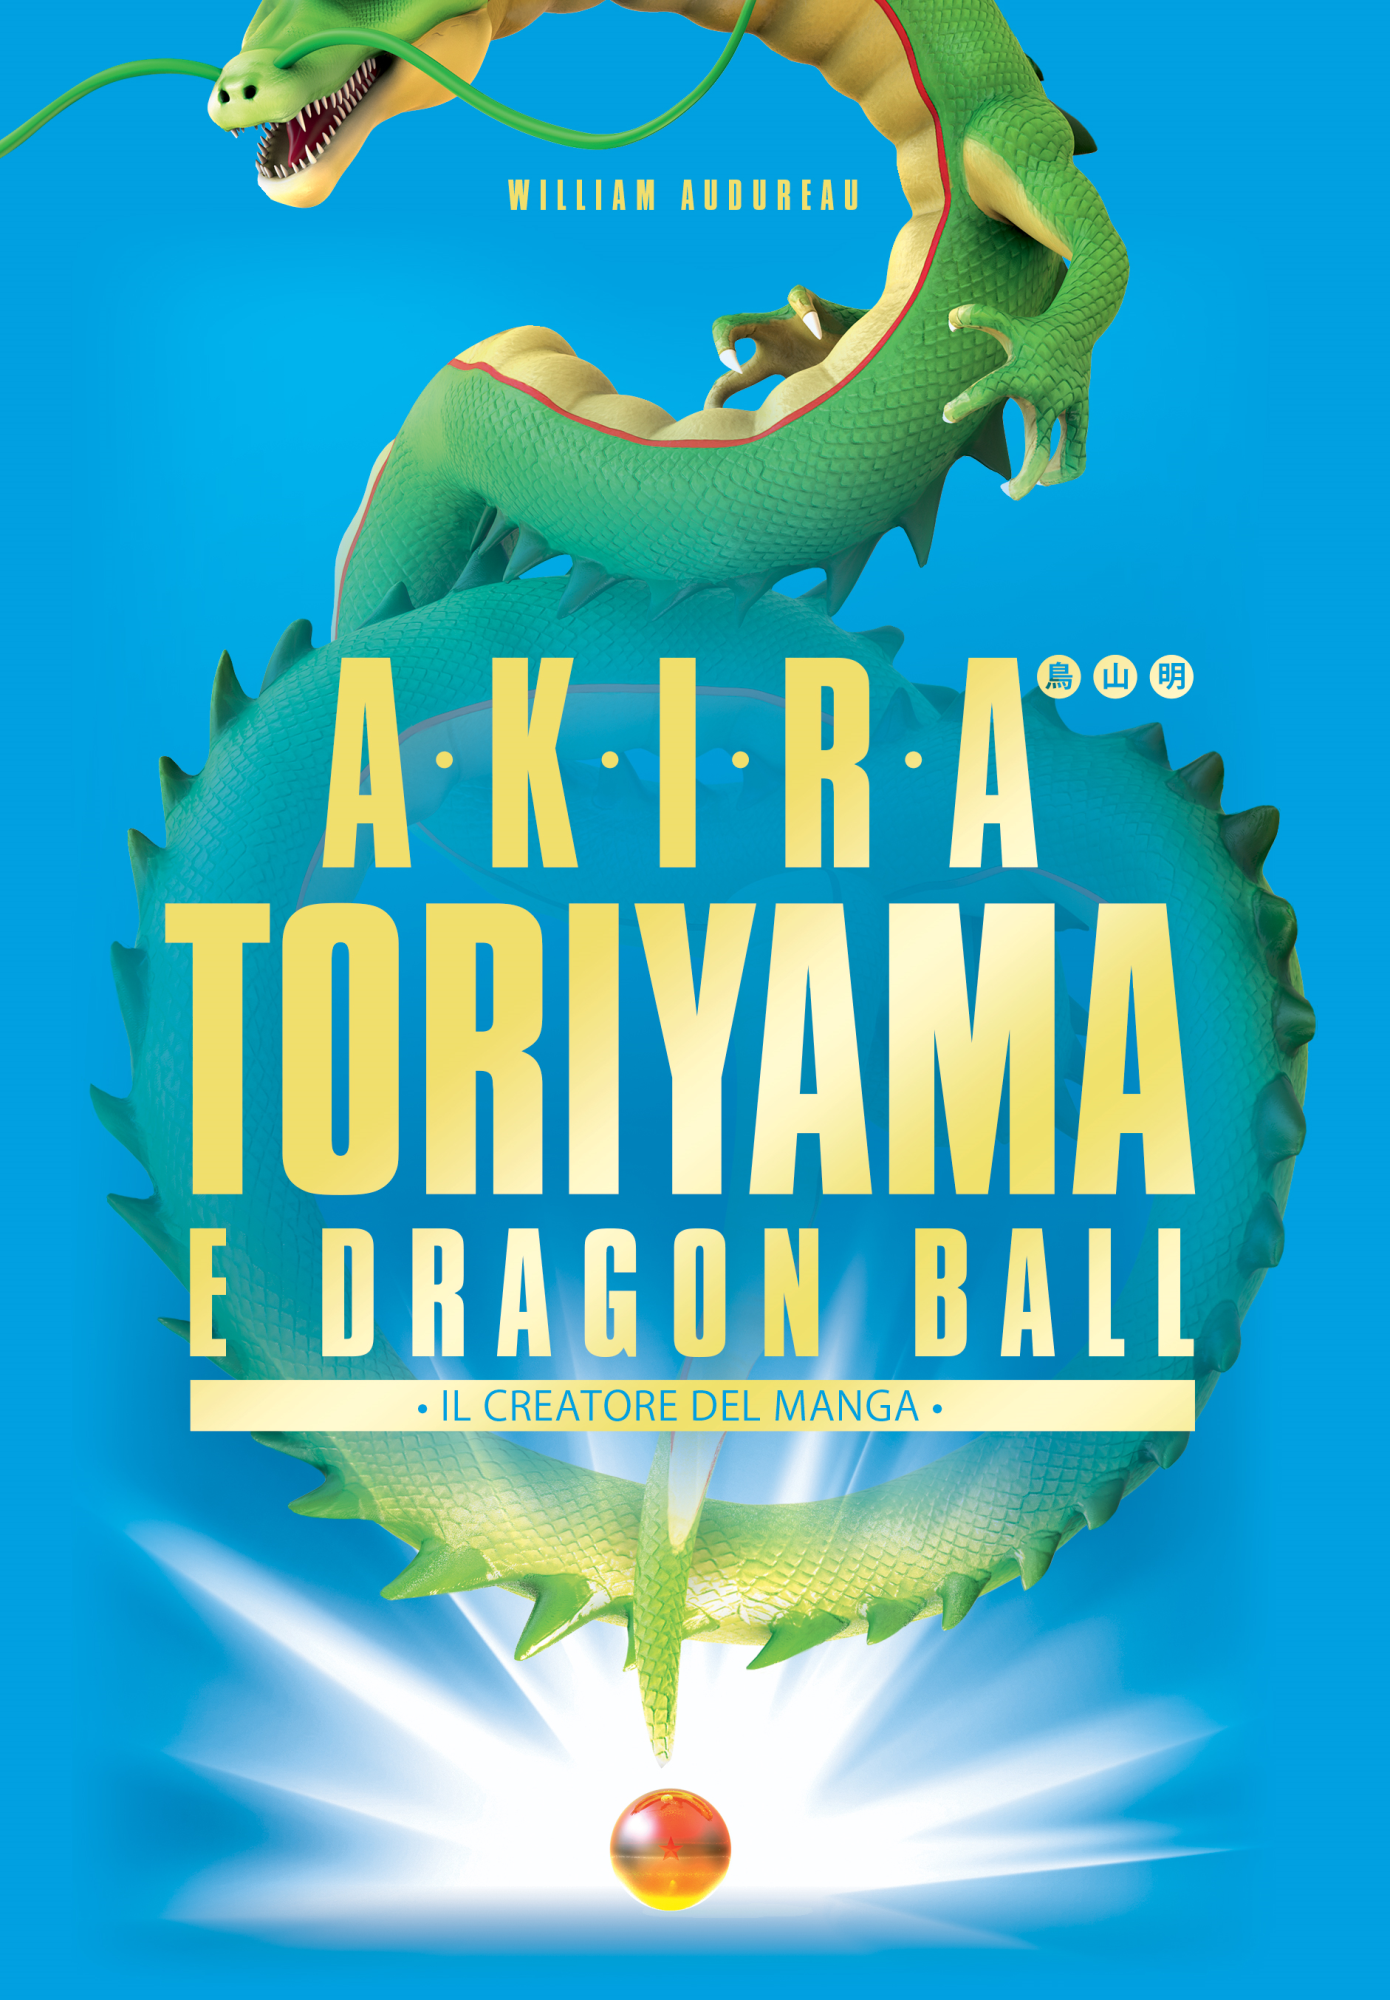 Libri William Audureau - Akira Toriyama E Dragon Ball. Il Creatore Del Manga NUOVO SIGILLATO, EDIZIONE DEL 22/03/2020 SUBITO DISPONIBILE